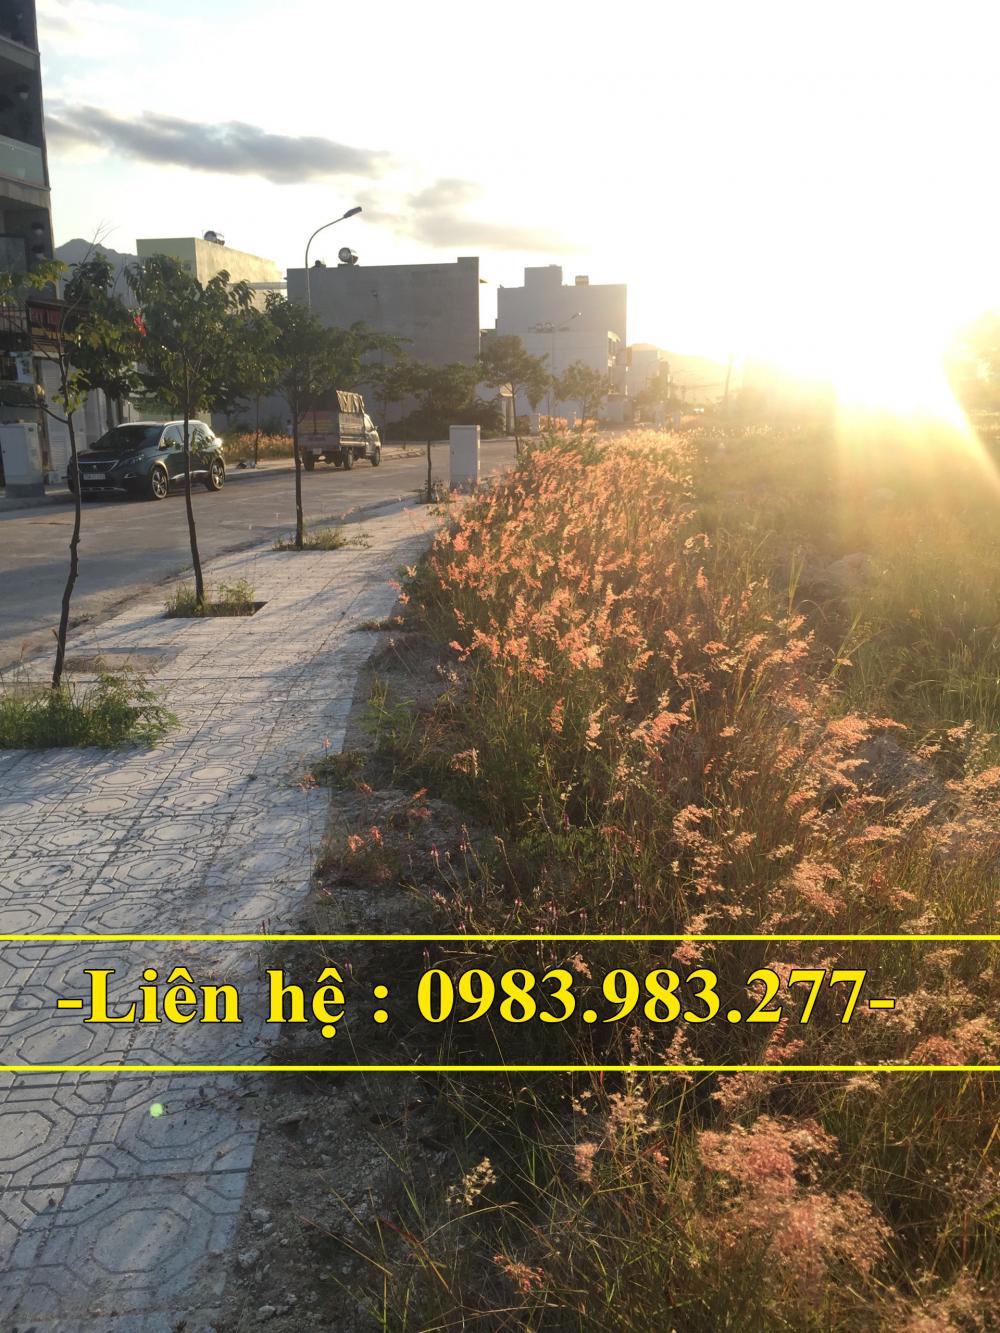 Bán lô đất đối diện khu cao tầng tại kđt An Bình Tân giá 23tr/m2.
 10173997